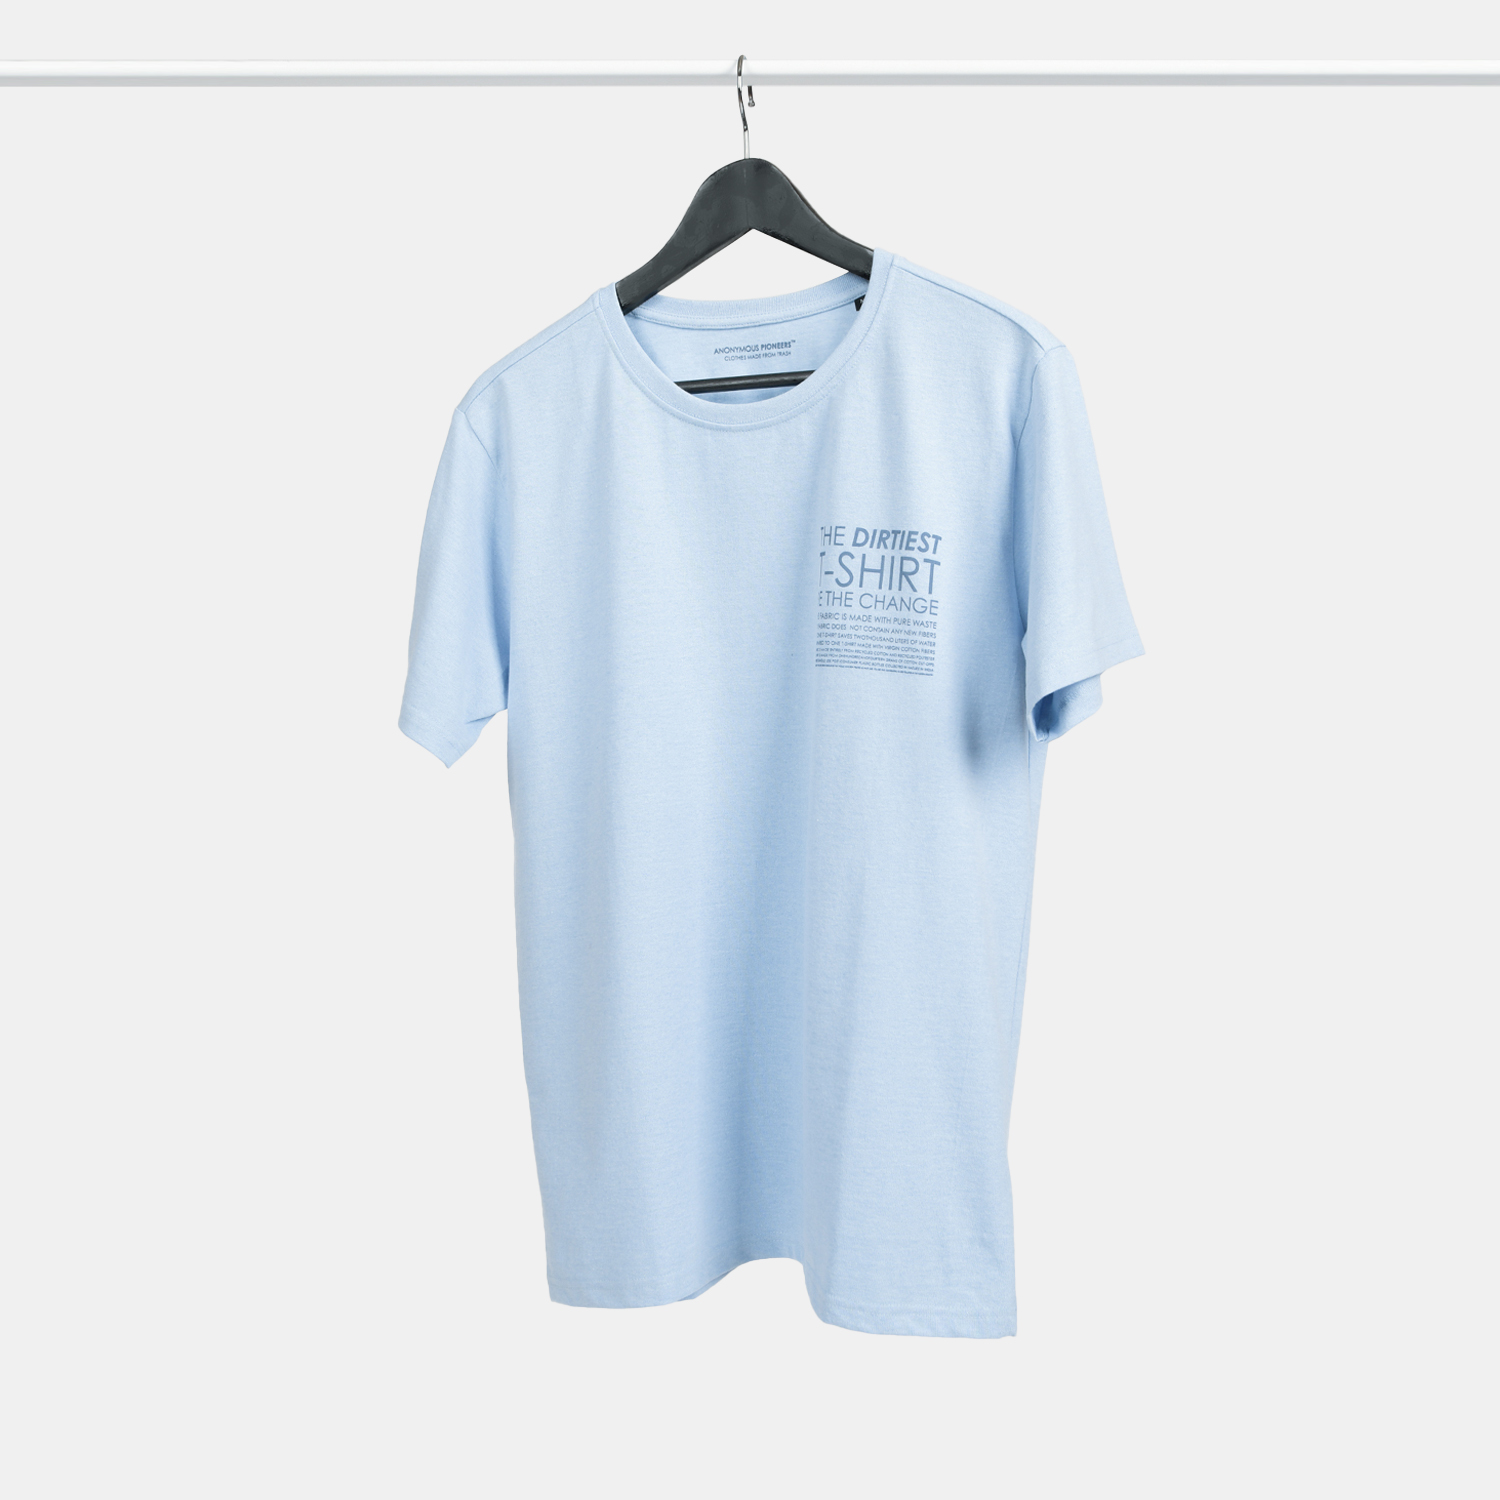 Genanvendt T-shirt i lyseblå til mænd, DIRTIEST print, fra A-PIONEER